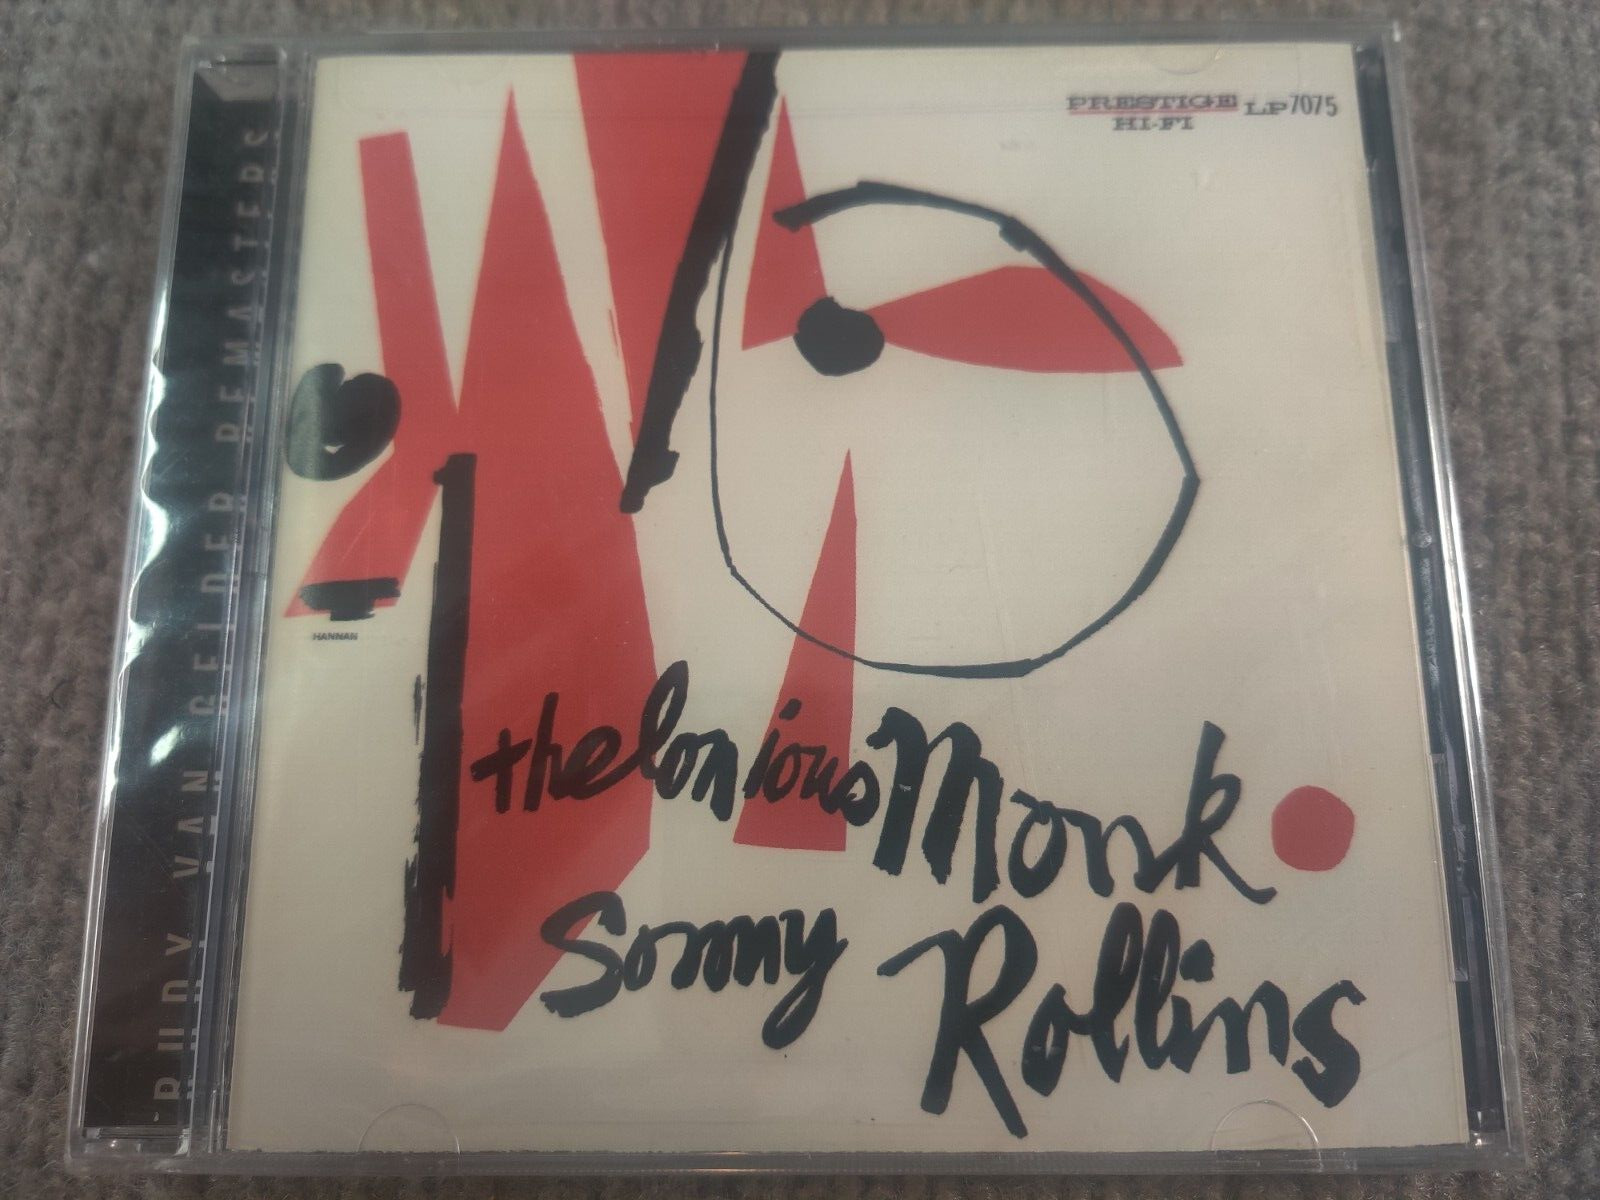 Thelonious Monk/ Sonny Rollins CD Rudy Van Gelder Remasters Prestige Records NEW